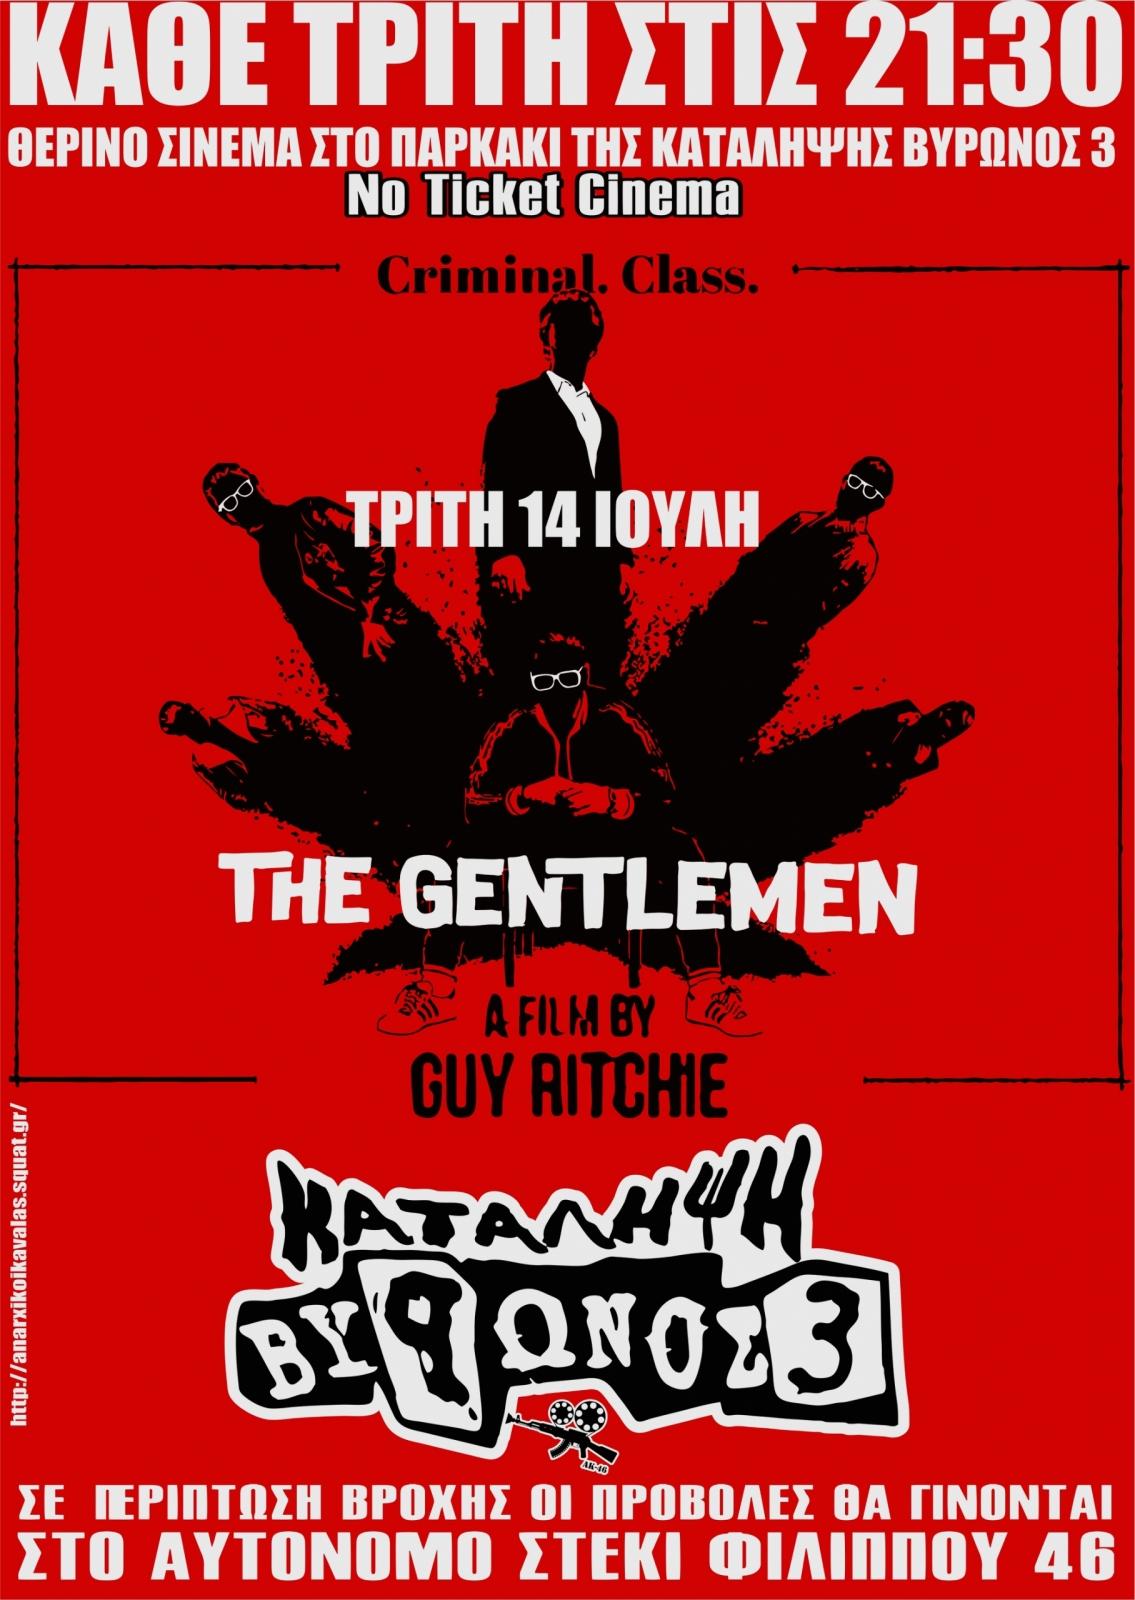 Καβάλα: Προβολή της ταινίας “The Gentlemen”